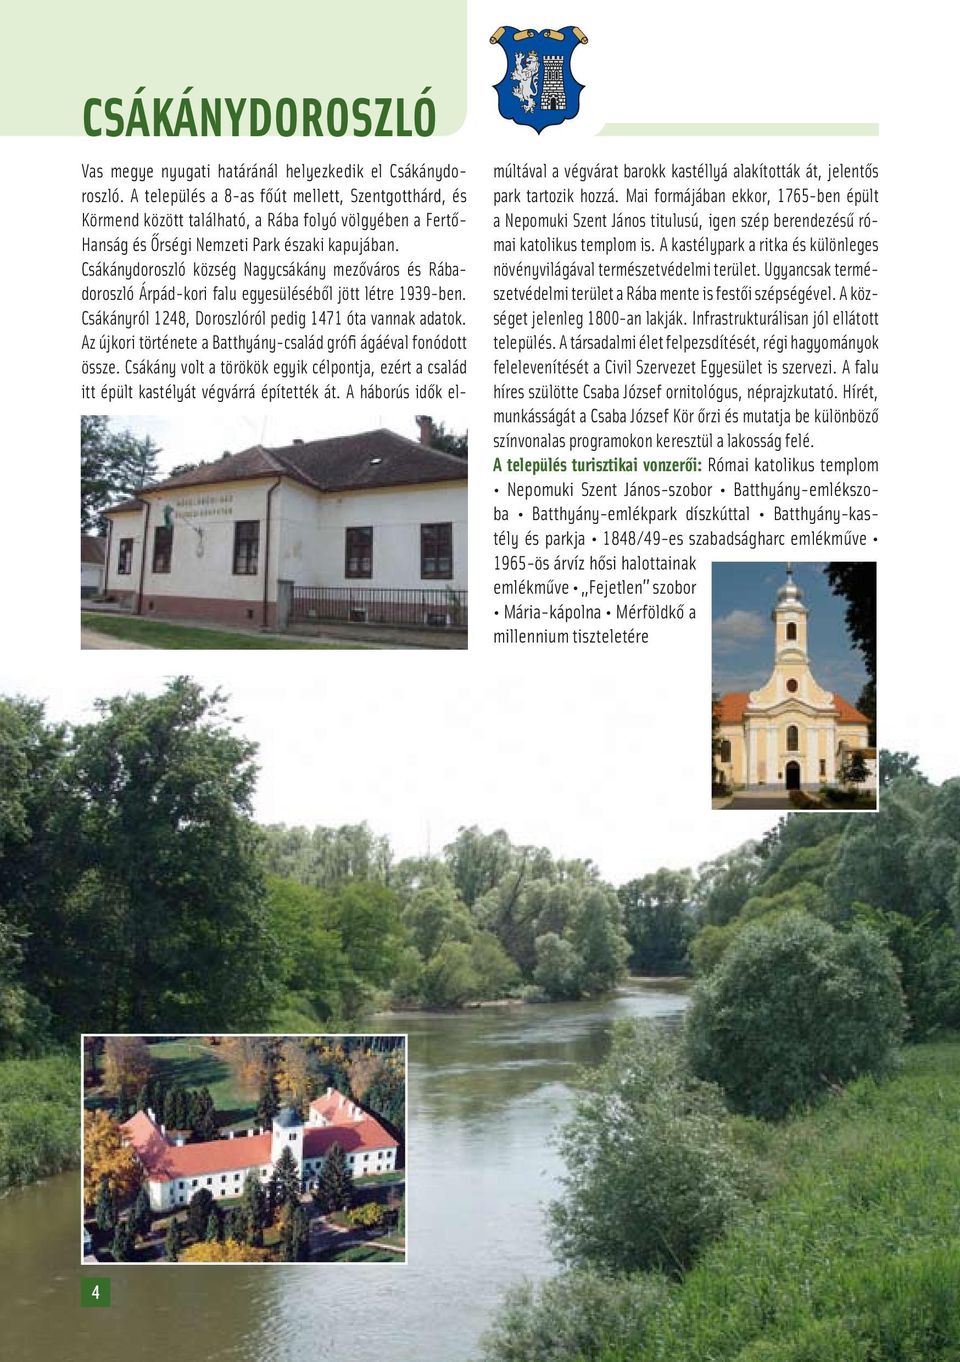 Csákánydoroszló község Nagycsákány mezôváros és Rábadoroszló Árpád-kori falu egyesülésébôl jött létre 1939-ben. Csákányról 1248, Doroszlóról pedig 1471 óta vannak adatok.